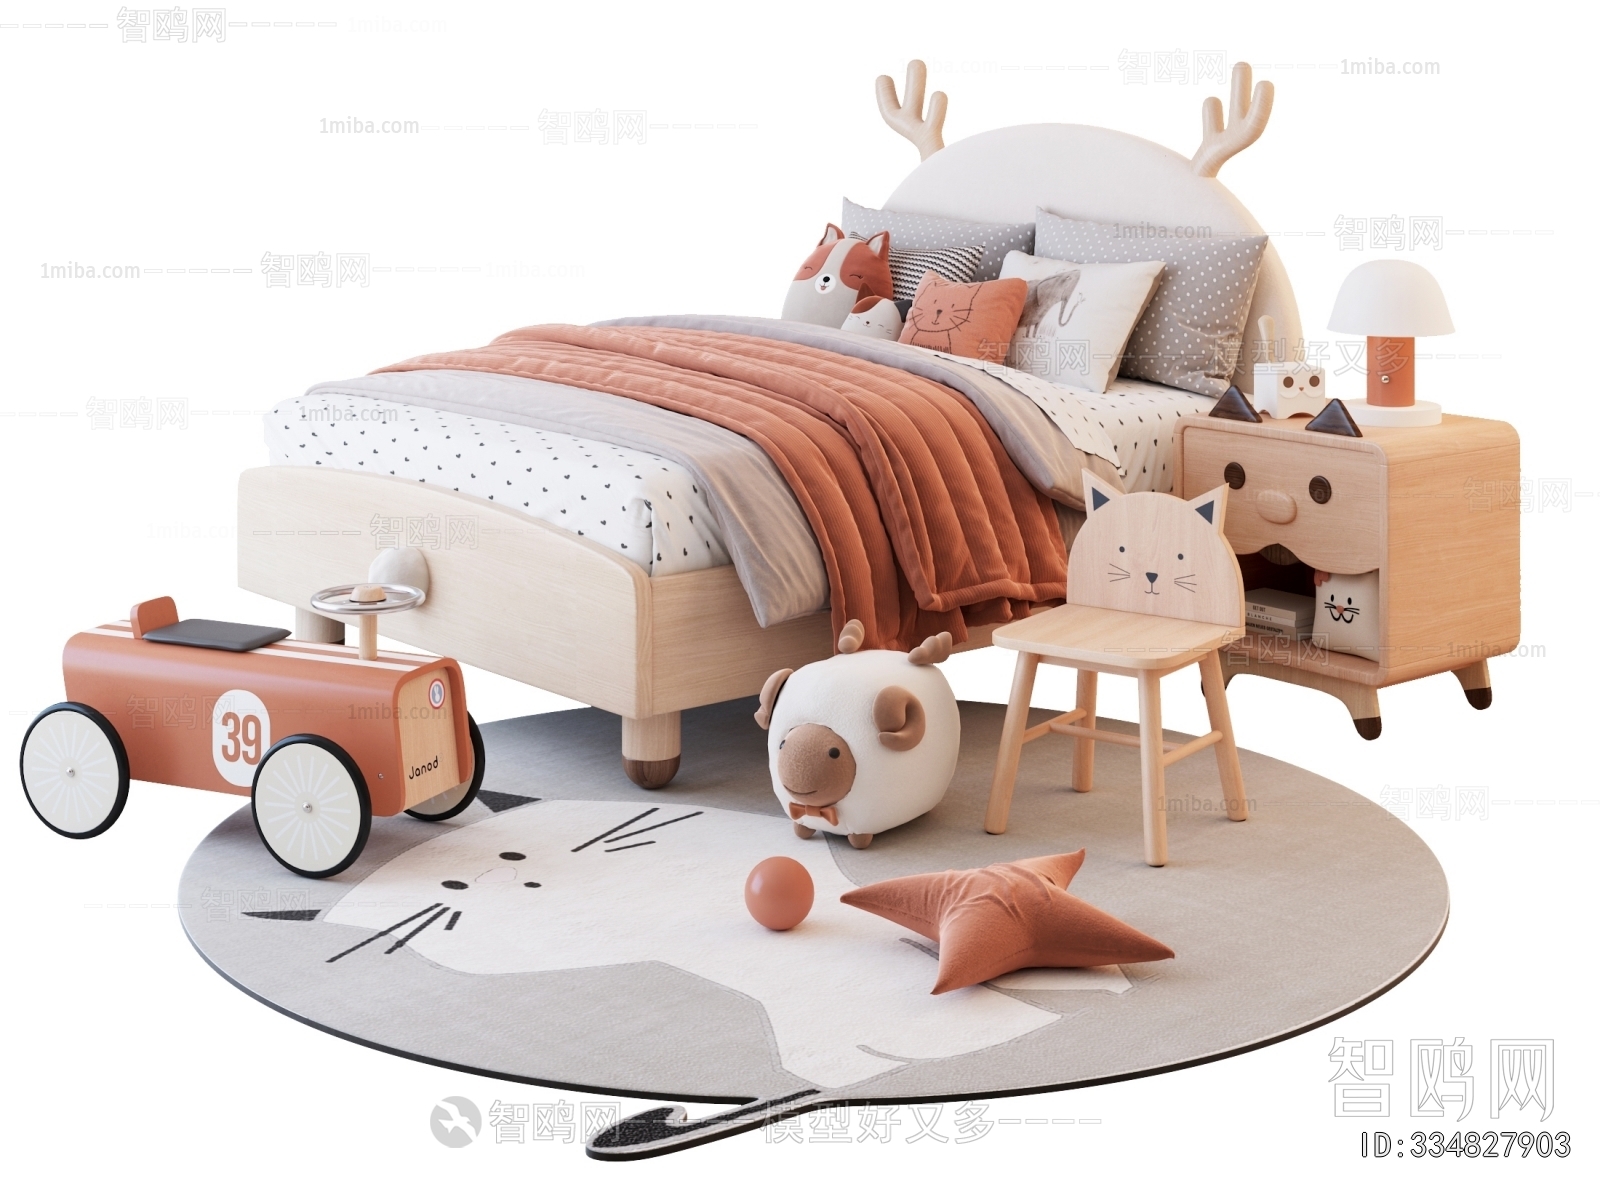 现代儿童床